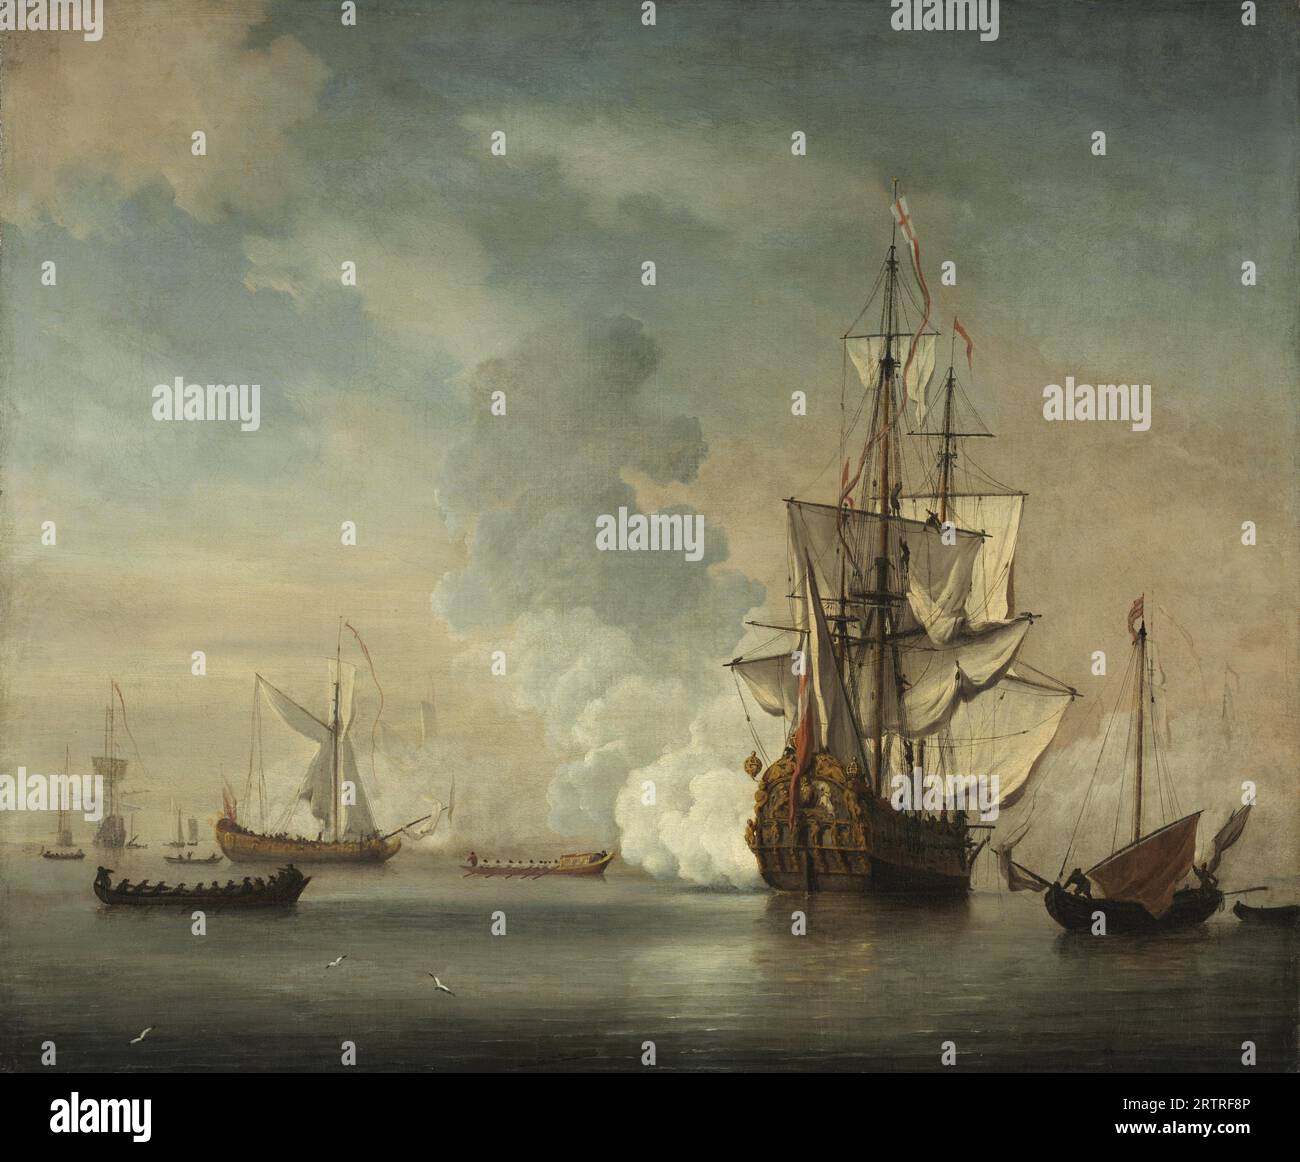 Navire de guerre anglais tirant un salut, peinture à l'huile du peintre hollandais Willem van de Velde 1690 Banque D'Images